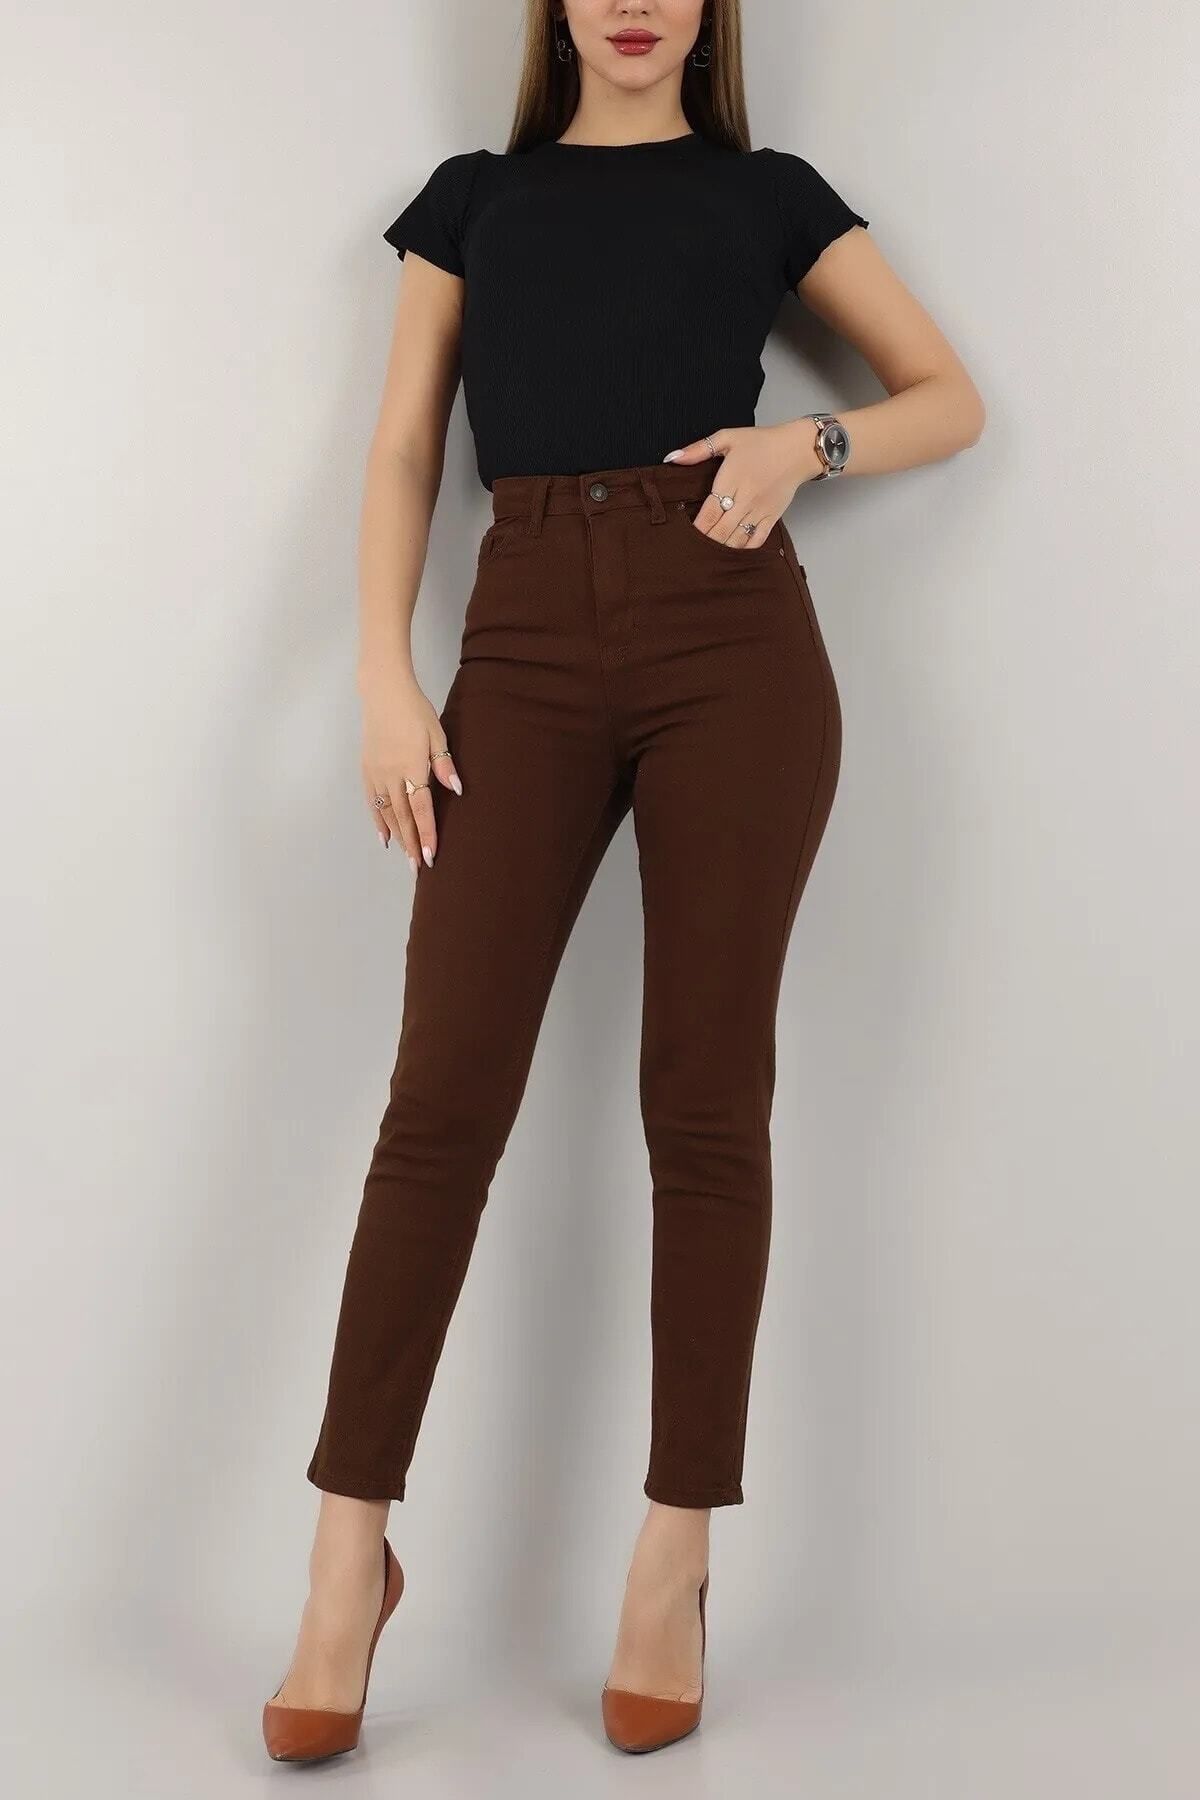 Geppetto Maria Kadın Koyu Kahverengi Süper Yüksek Bel Comfort Likralı Mom Kot Pantalon Jeans